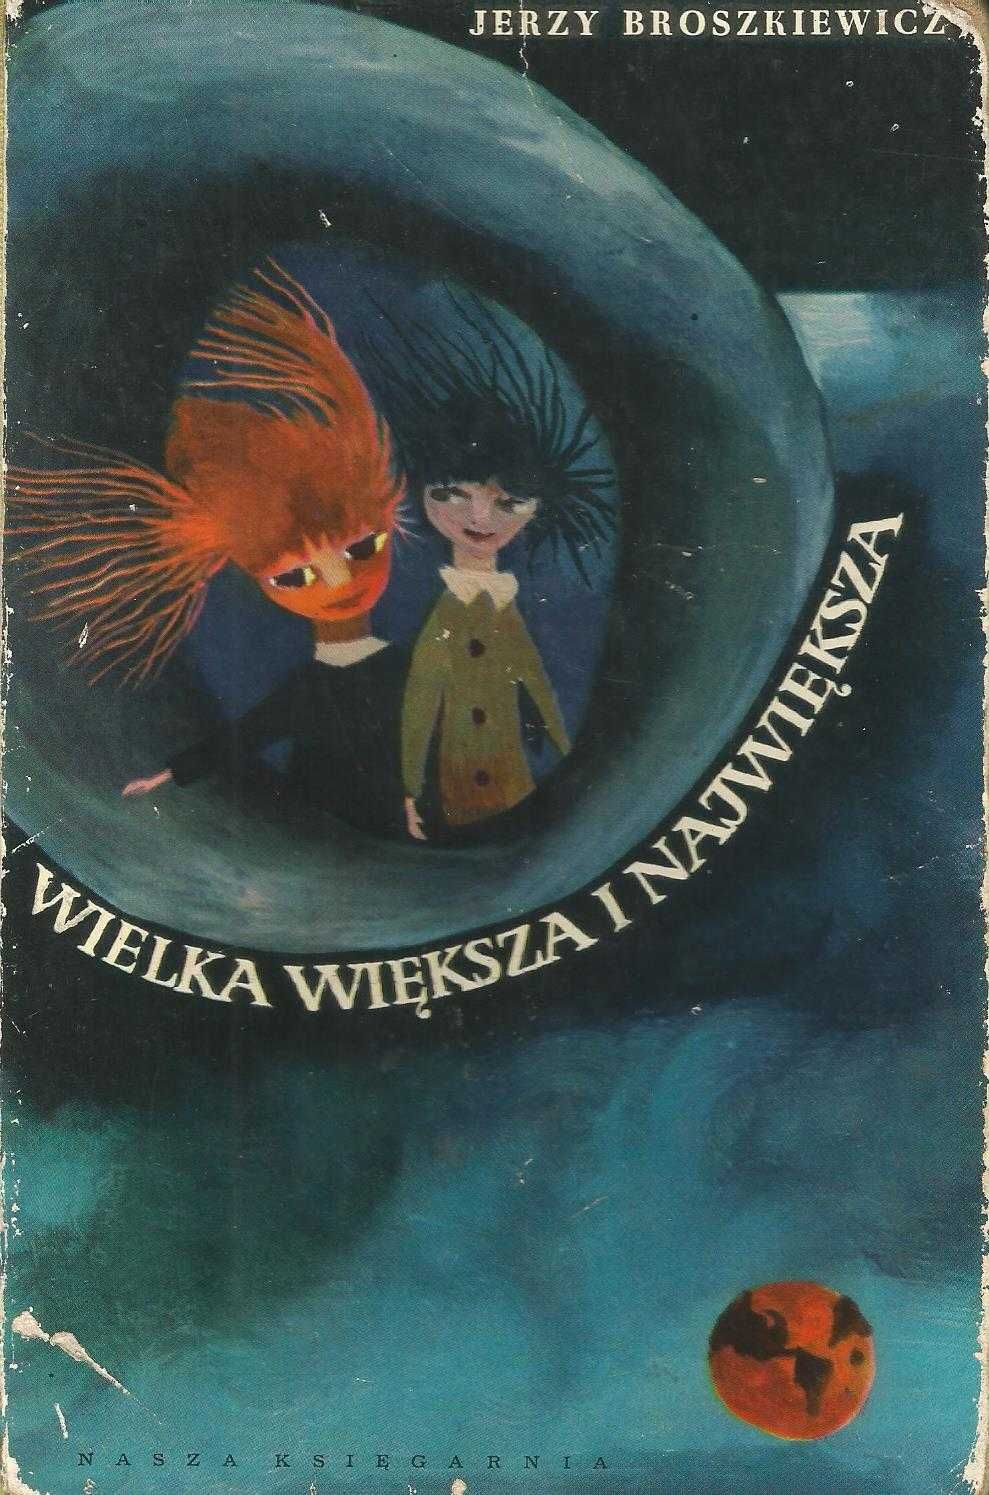 Broszkiewicz Wielka większa największa twarda wydanie 1961 r.